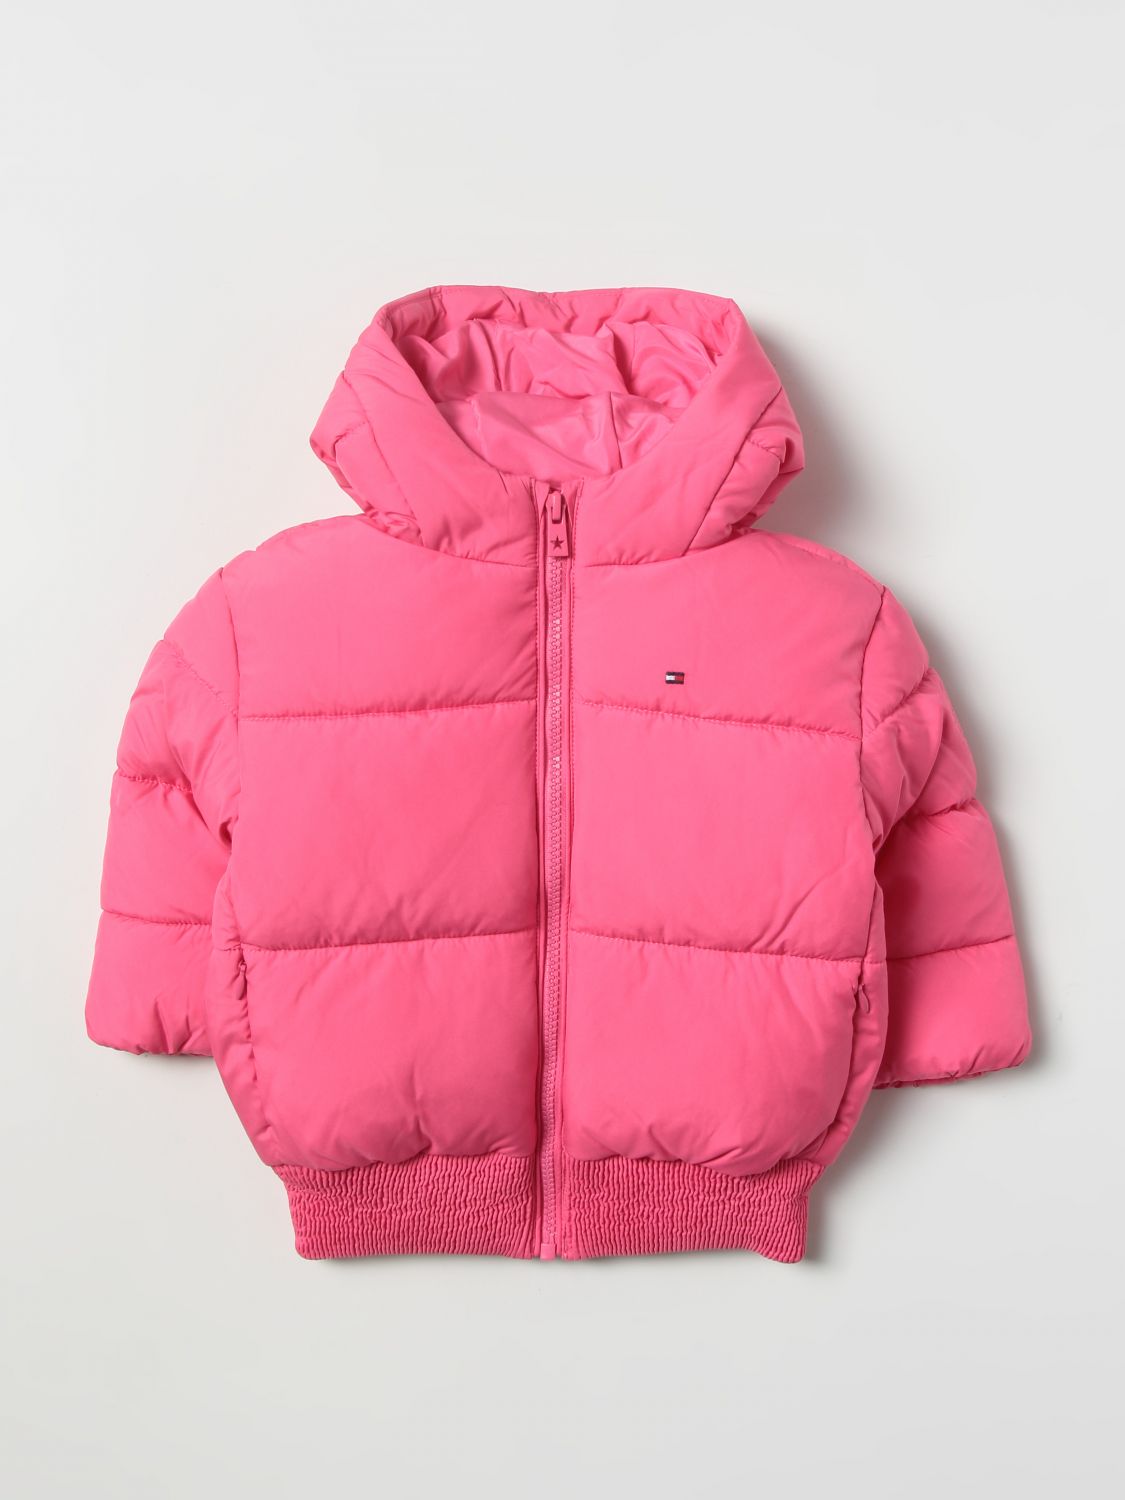 Snikken Kaliber Los Tommy Hilfiger Outlet: jacket for girl - Pink | Tommy Hilfiger jacket  KG0KG06689 online on GIGLIO.COM